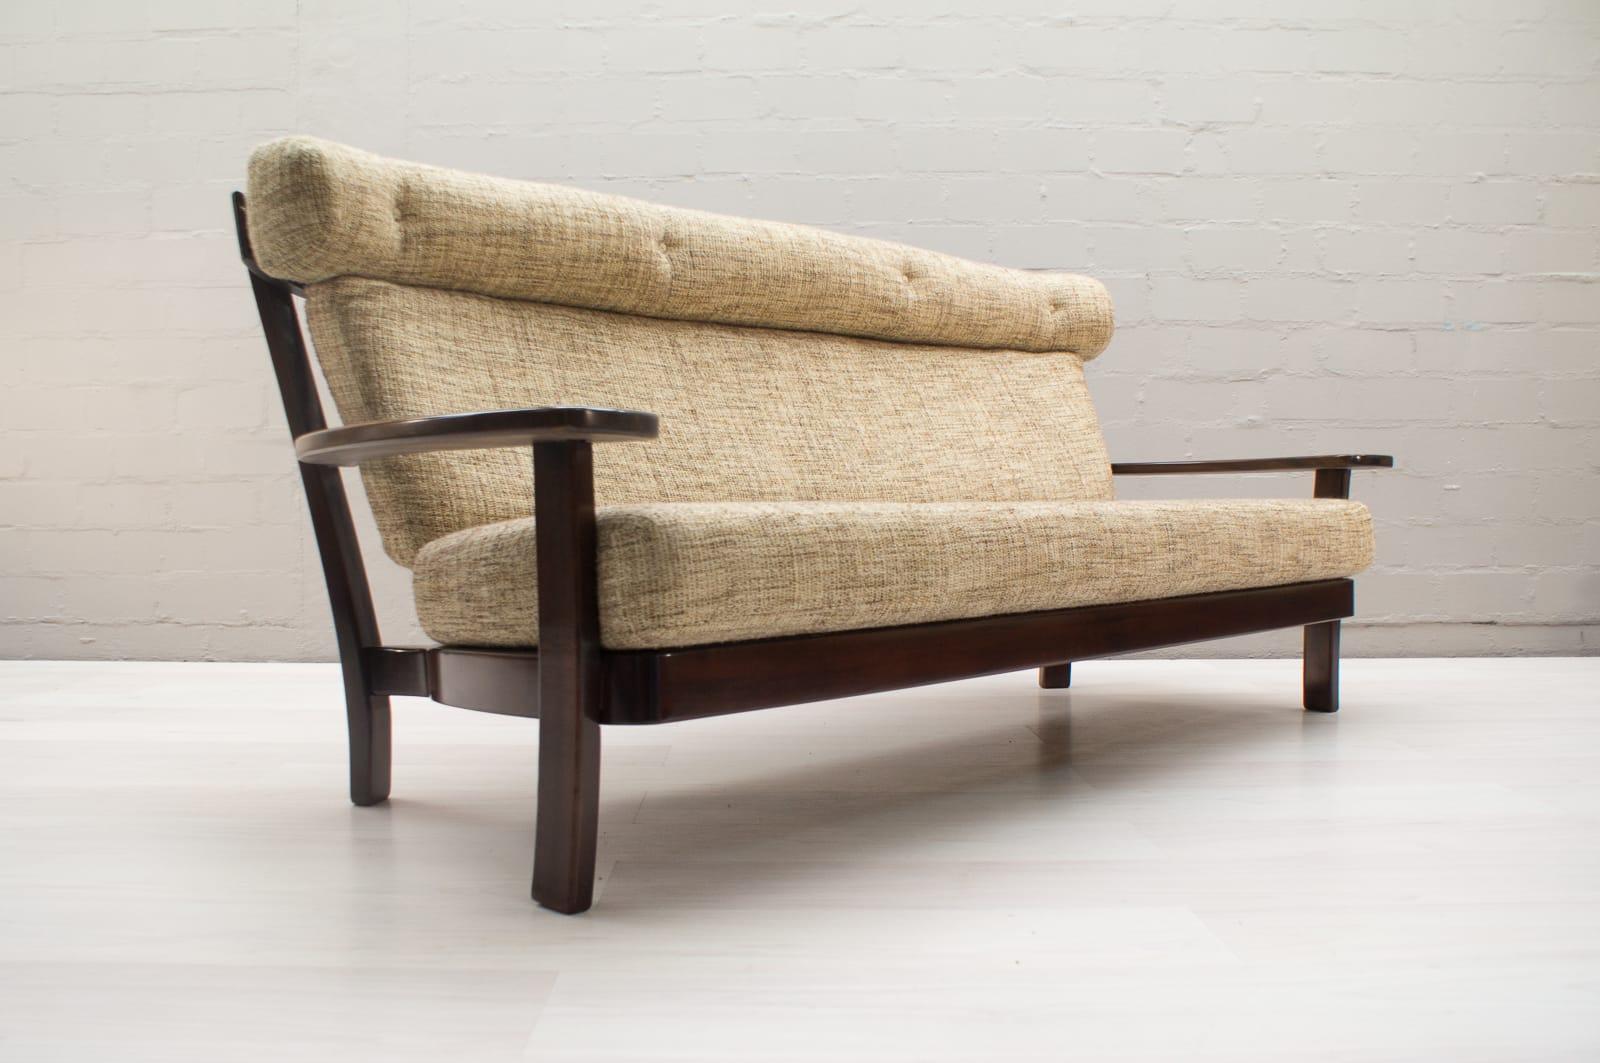 Sofa, Palisanderholz, brasilianisches Design, europäische Ausführung, 1960er Jahre. Die Sofagarnitur ist noch mit dem Originalbezugsstoff bezogen. Alles in allem ein sehr guter Zustand.

Dieses Sofa ist aus brasilianischem Palisanderholz und Stoff